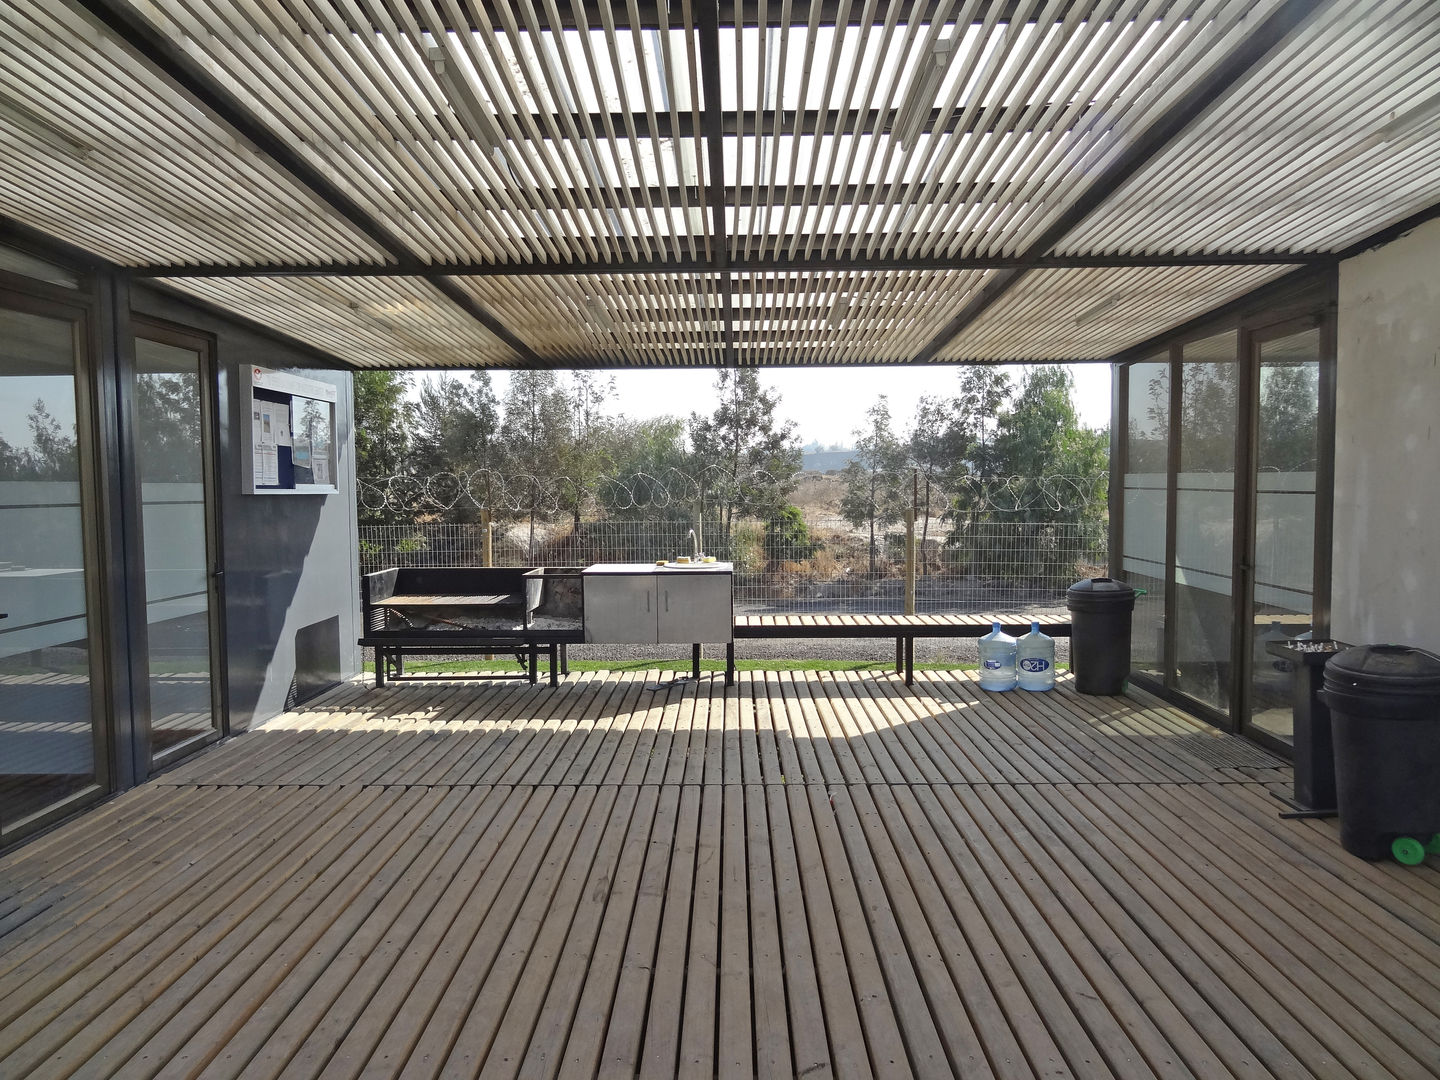 Oficinas Modulares Transportables, m2 estudio arquitectos - Santiago m2 estudio arquitectos - Santiago Merdivenler